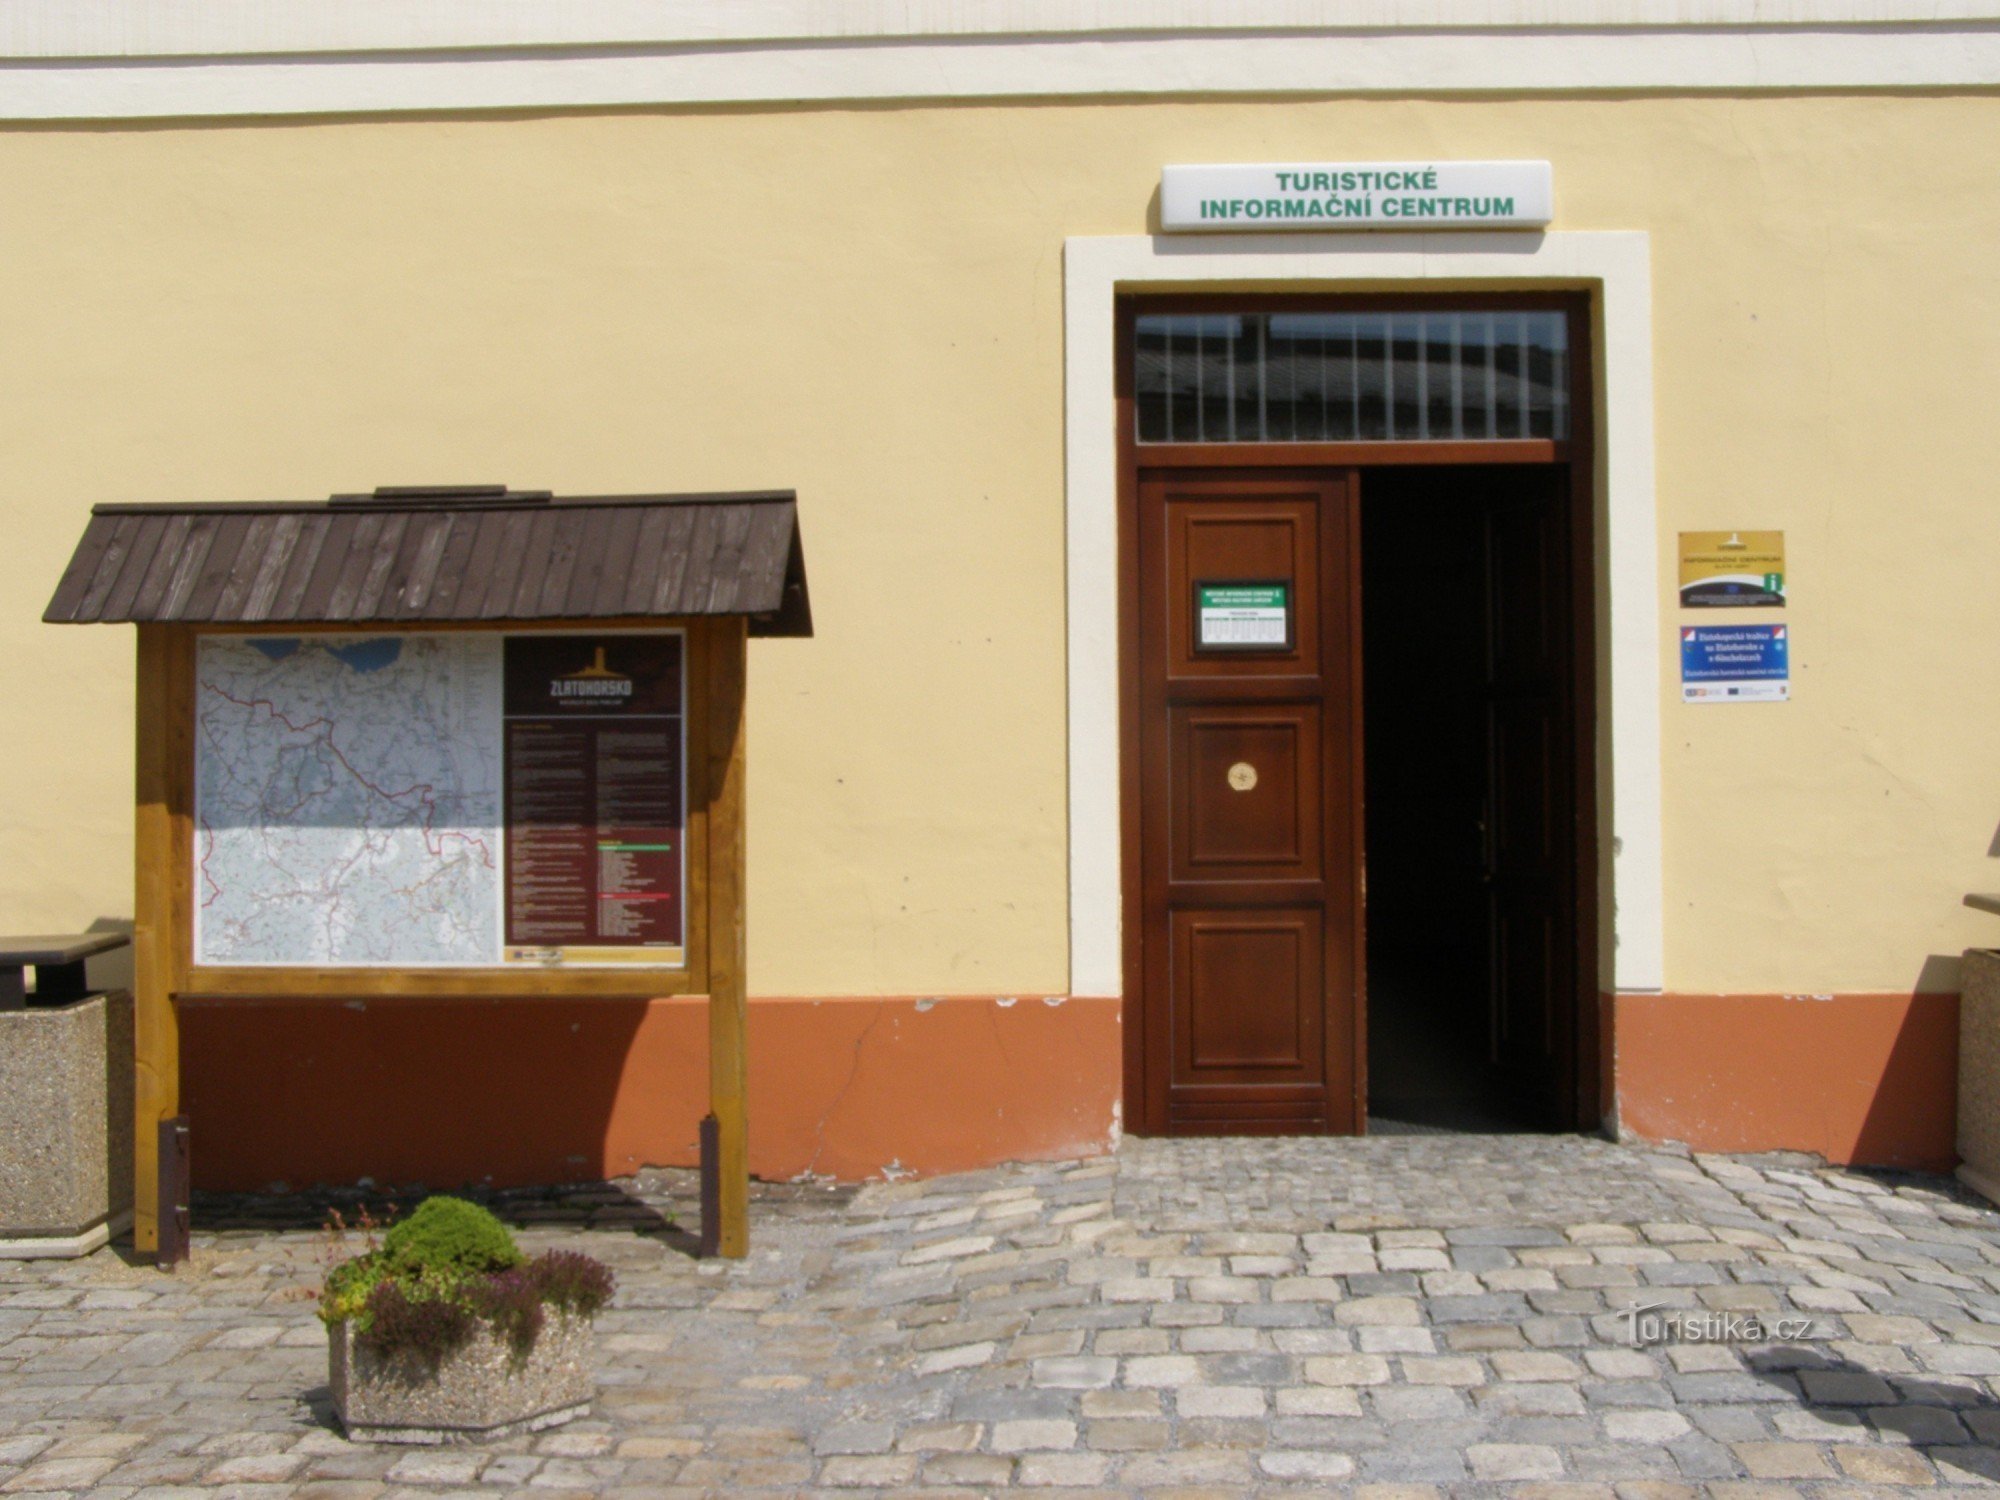 Zlaté Hory - information center